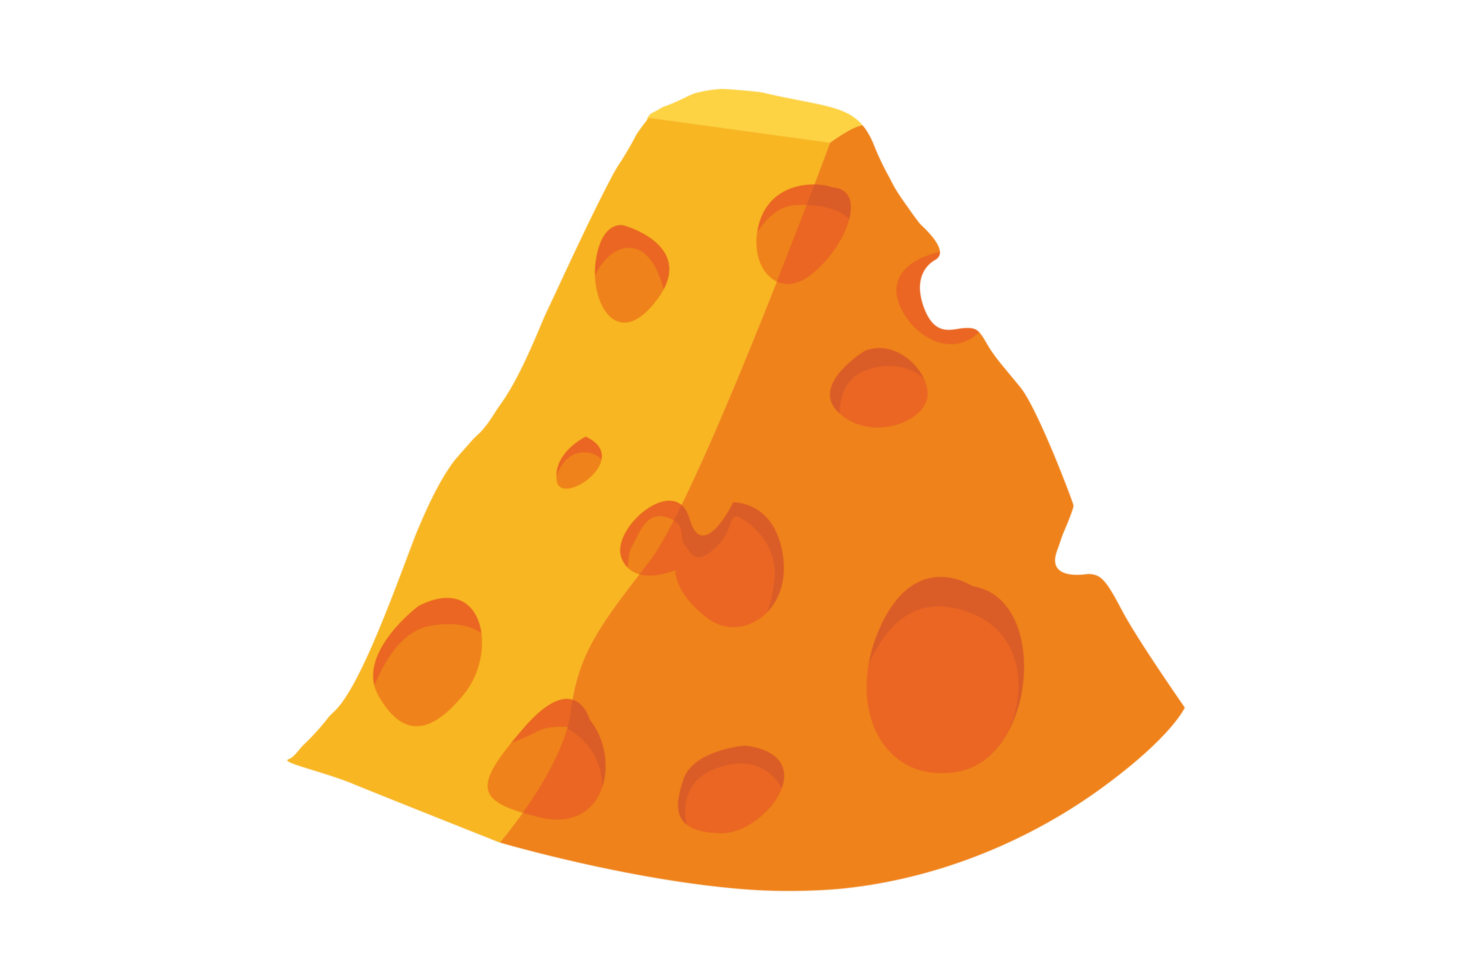 queijo com pedaços triangulares png